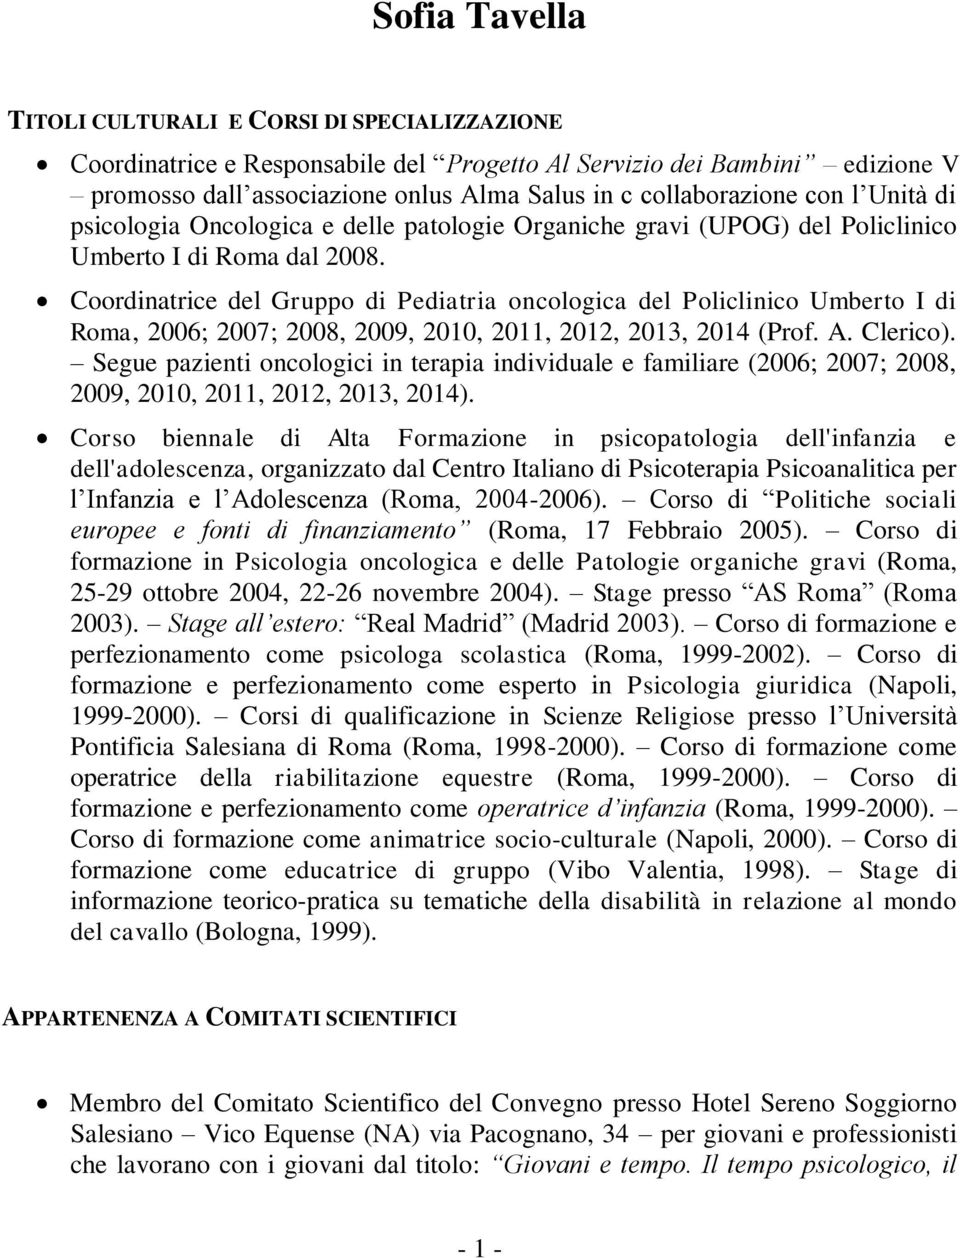 Coordinatrice del Gruppo di Pediatria oncologica del Policlinico Umberto I di Roma, 2006; 2007; 2008, 2009, 2010, 2011, 2012, 2013, 2014 (Prof. A. Clerico).